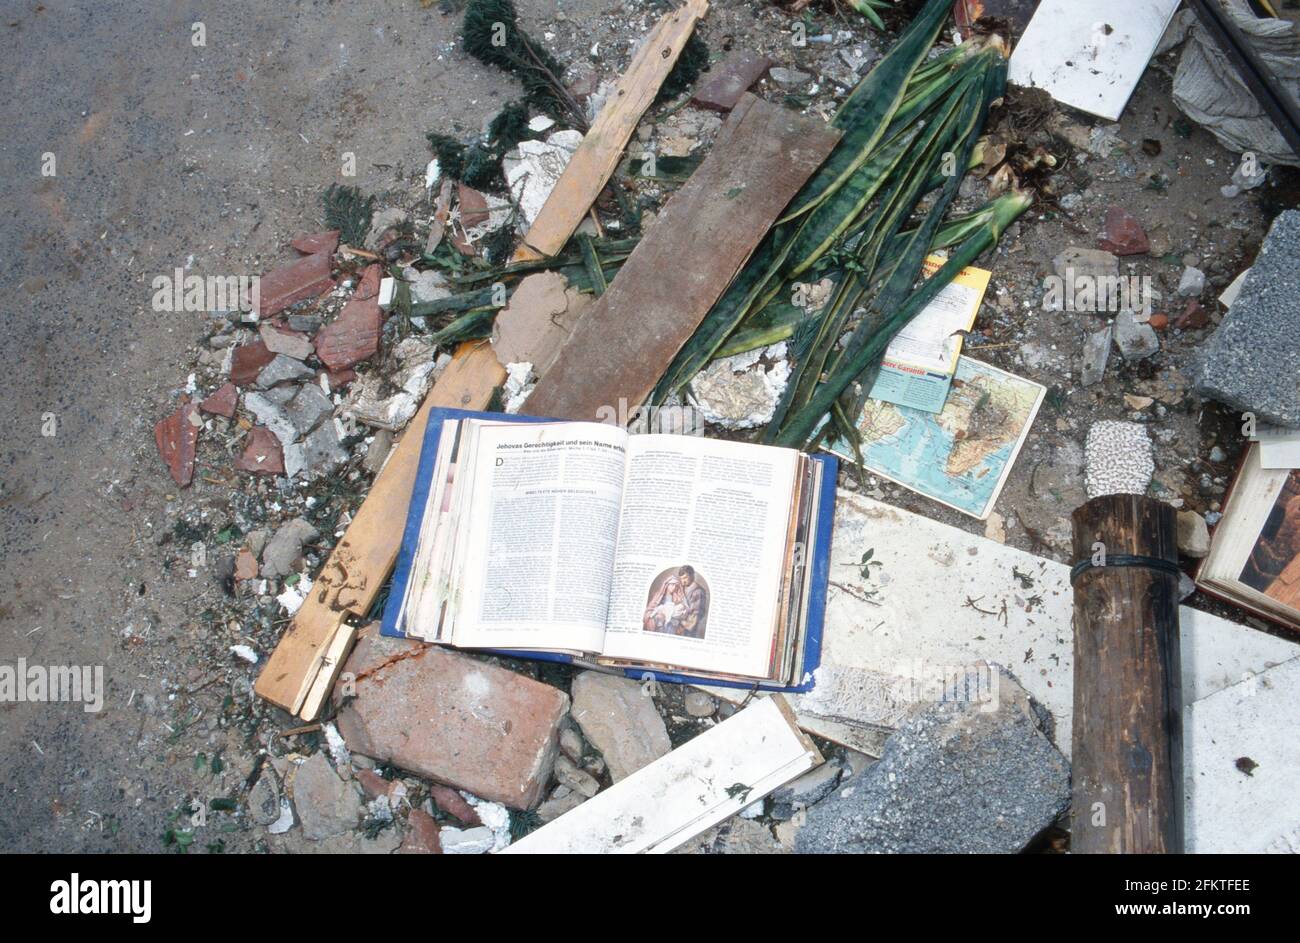 Eine Sammlung der Zeitschrift 'Der Wachturm' von den Zeugen Jehovas findet sich in den Trümmern des bei einer Gasexplosion zerstörten Doppelhauses in Darmstadt, Deutschland 1992. Stock Photo